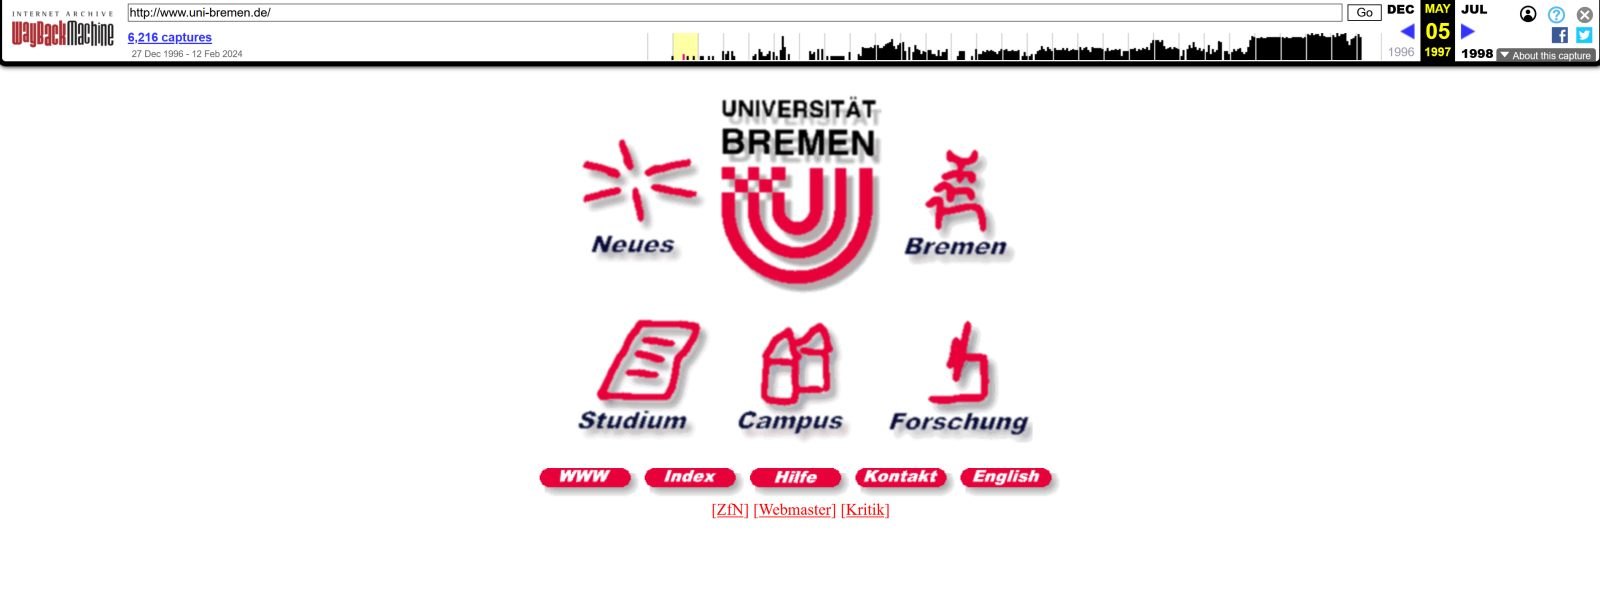 Vor einem weißen Hintergrund befindet sich in zentraler Position in roter Farbe das Logo der Universität Bremen. Um das Logo herum sind 5 kleine rote Symbole platziert. Das das sind Links, also Verlinkungen zu weiteren Webseiten im Webauftritt der Uni. Di